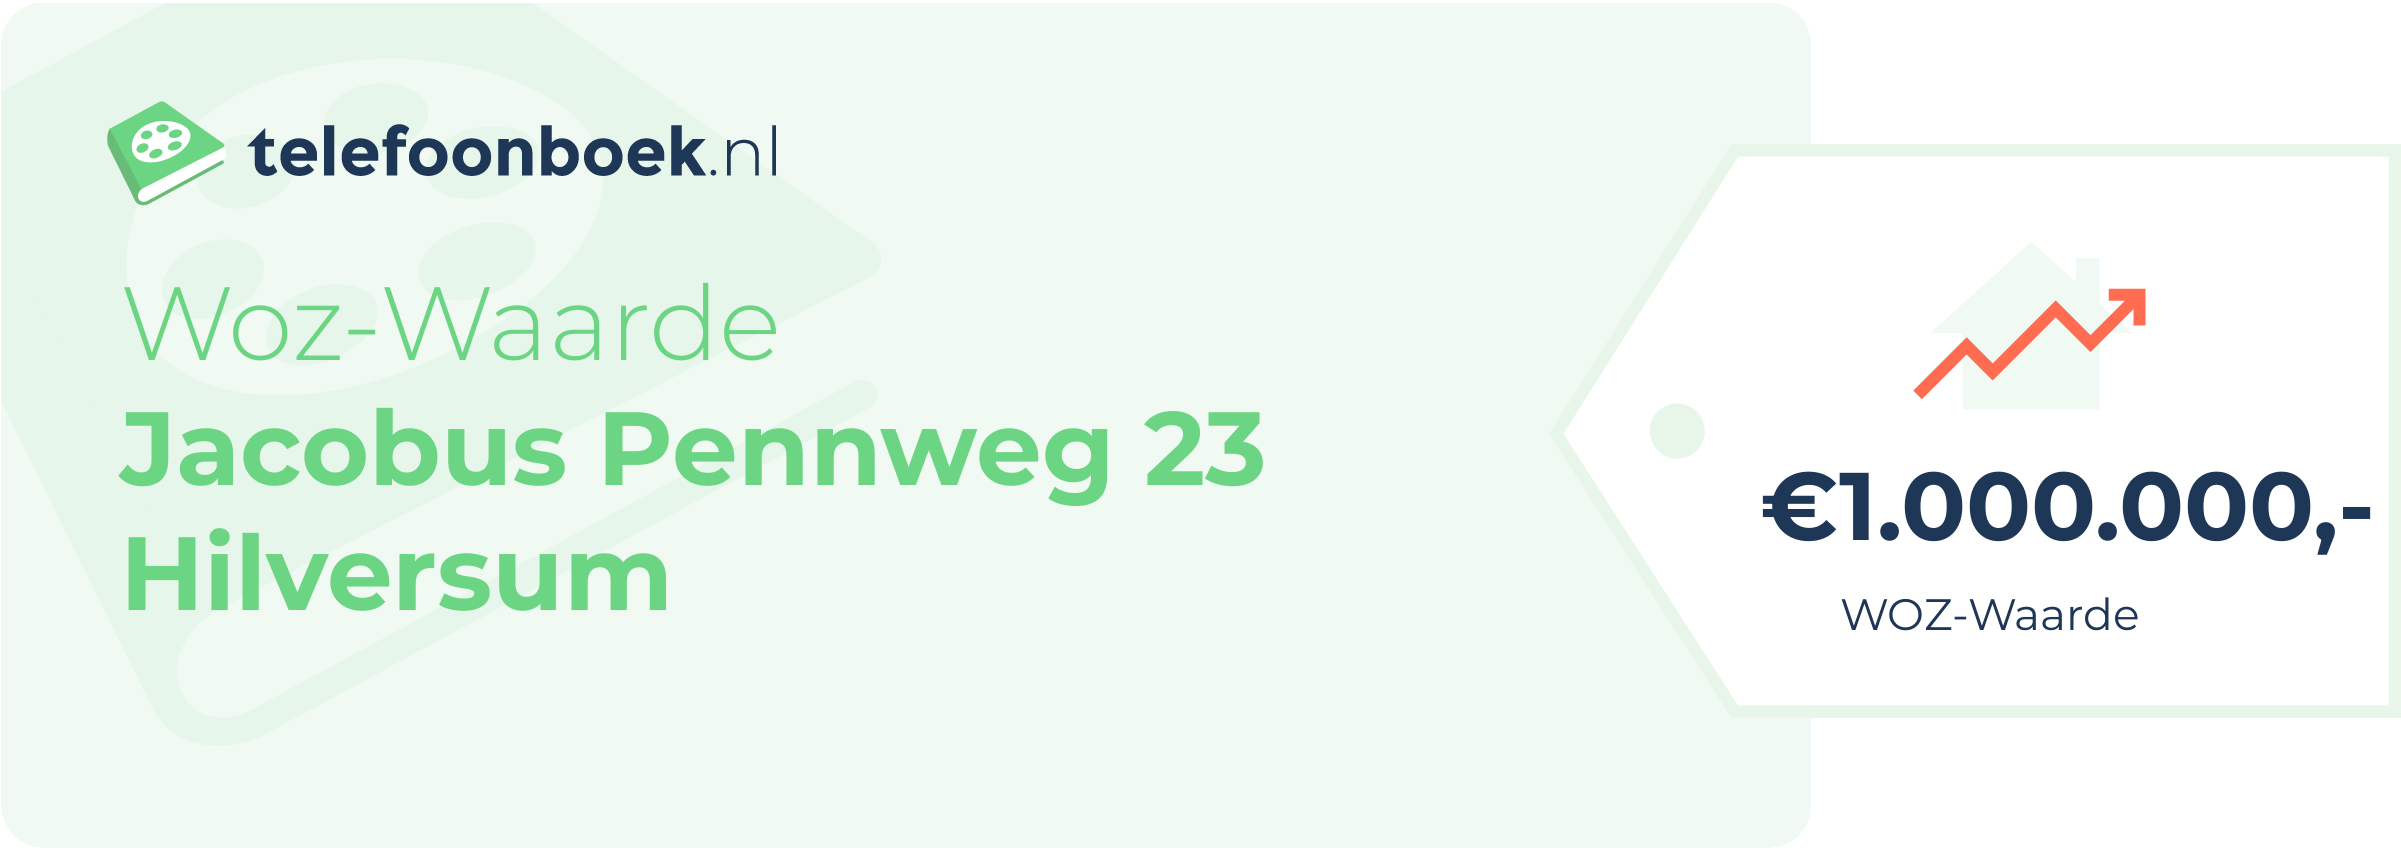 WOZ-waarde Jacobus Pennweg 23 Hilversum